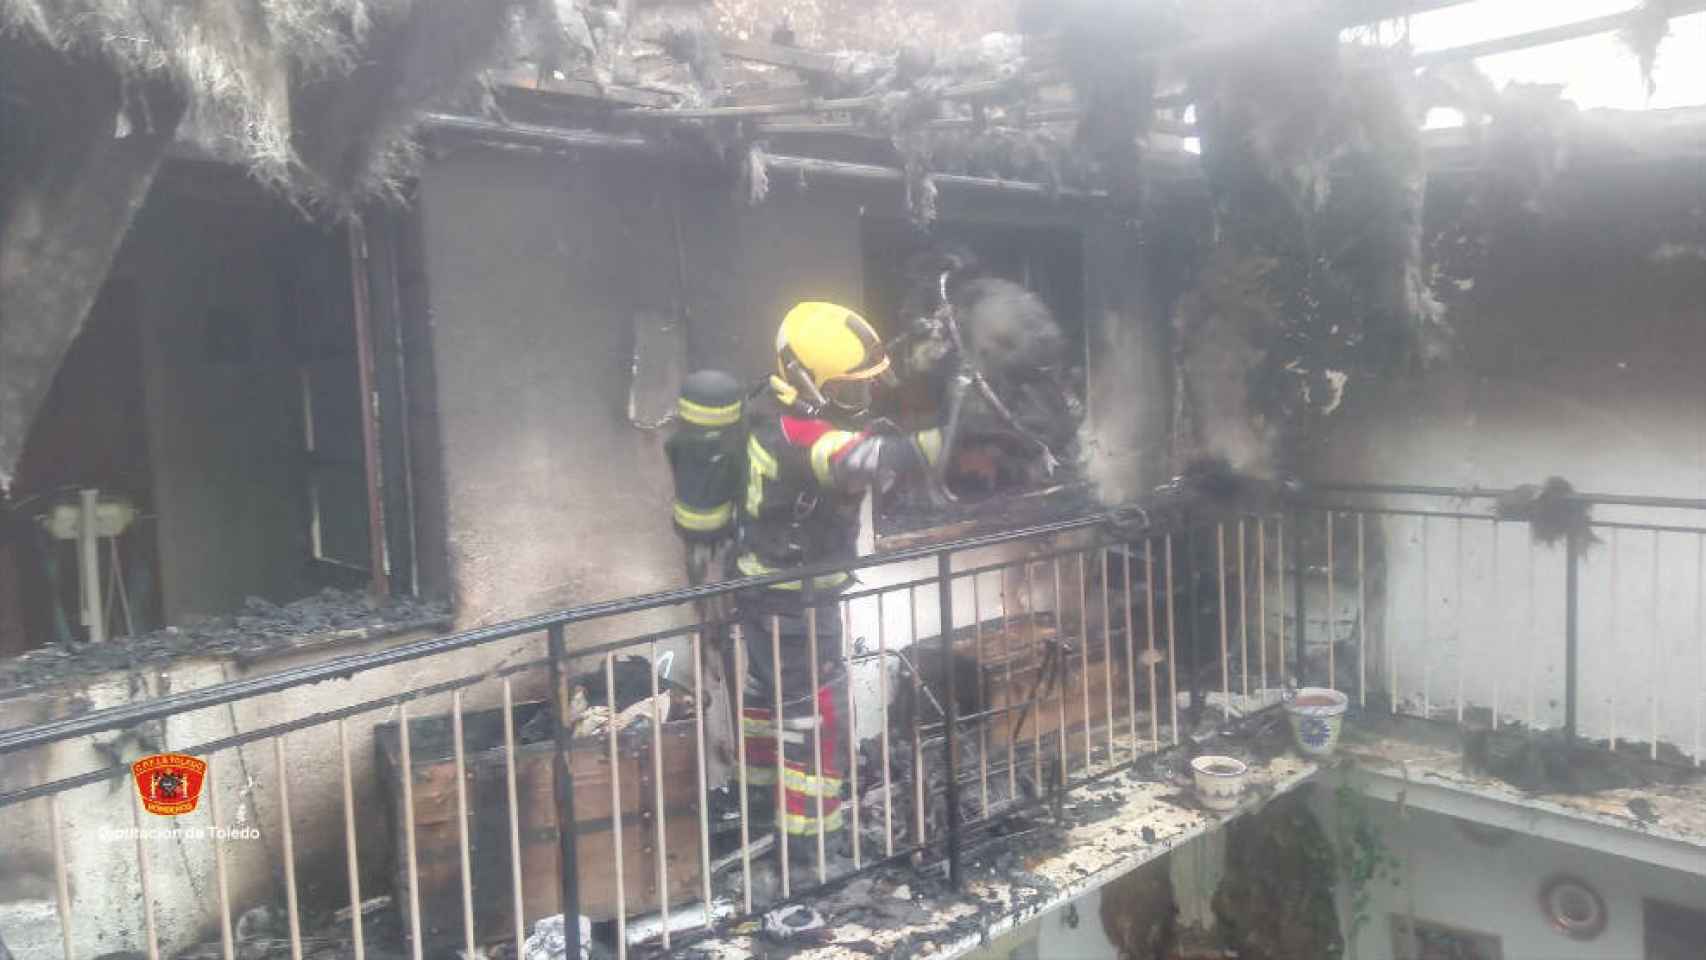 La vivienda afectada ha quedado muy afectada por las llamas (Foto: @cpeistoledo)